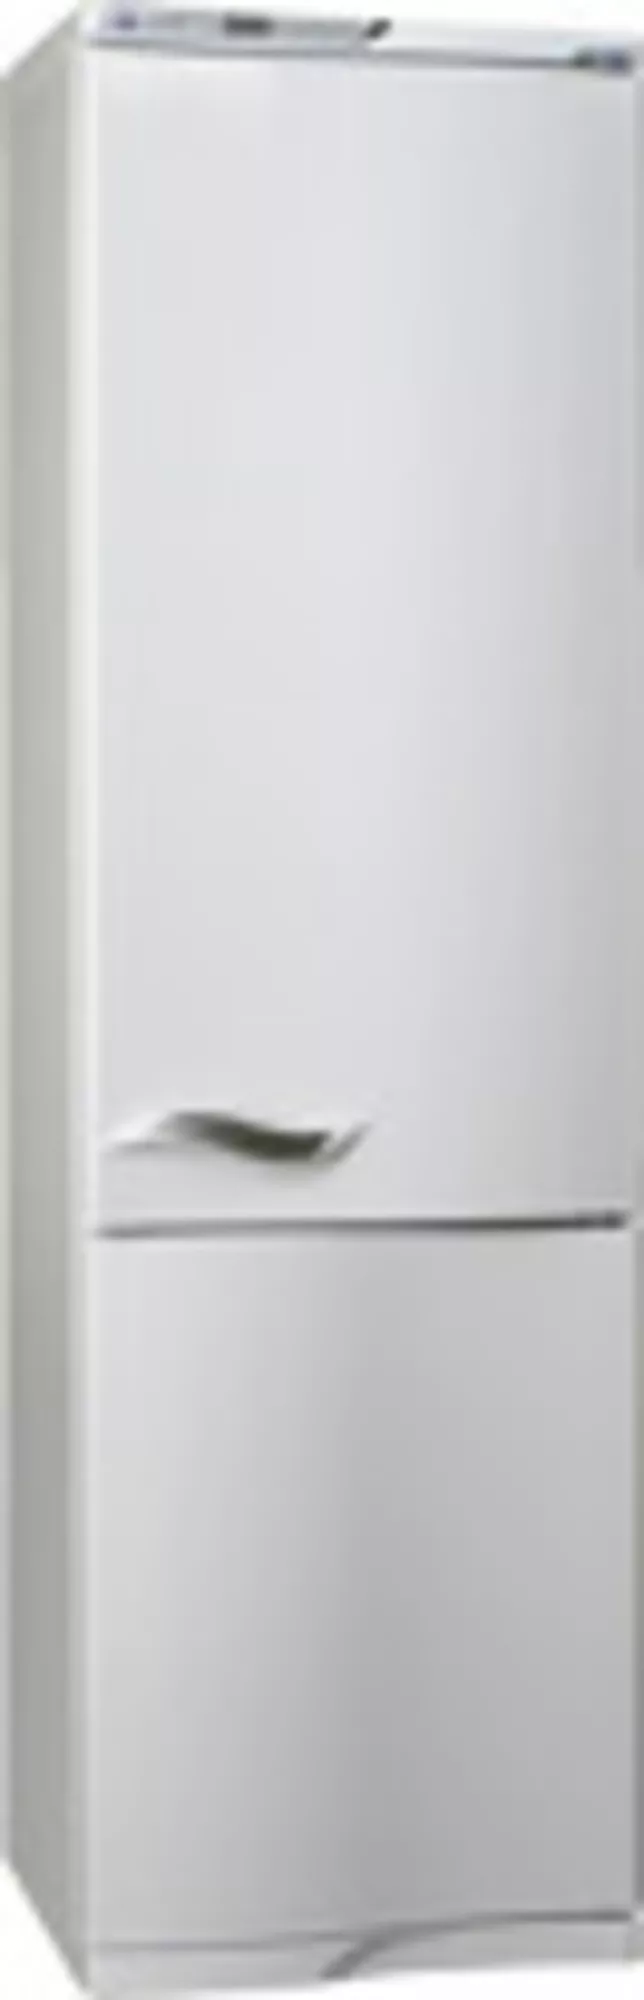 Двухкамерный холодильник АТЛАНТ MXM-1843-62,  новый,  в упаковке. 3